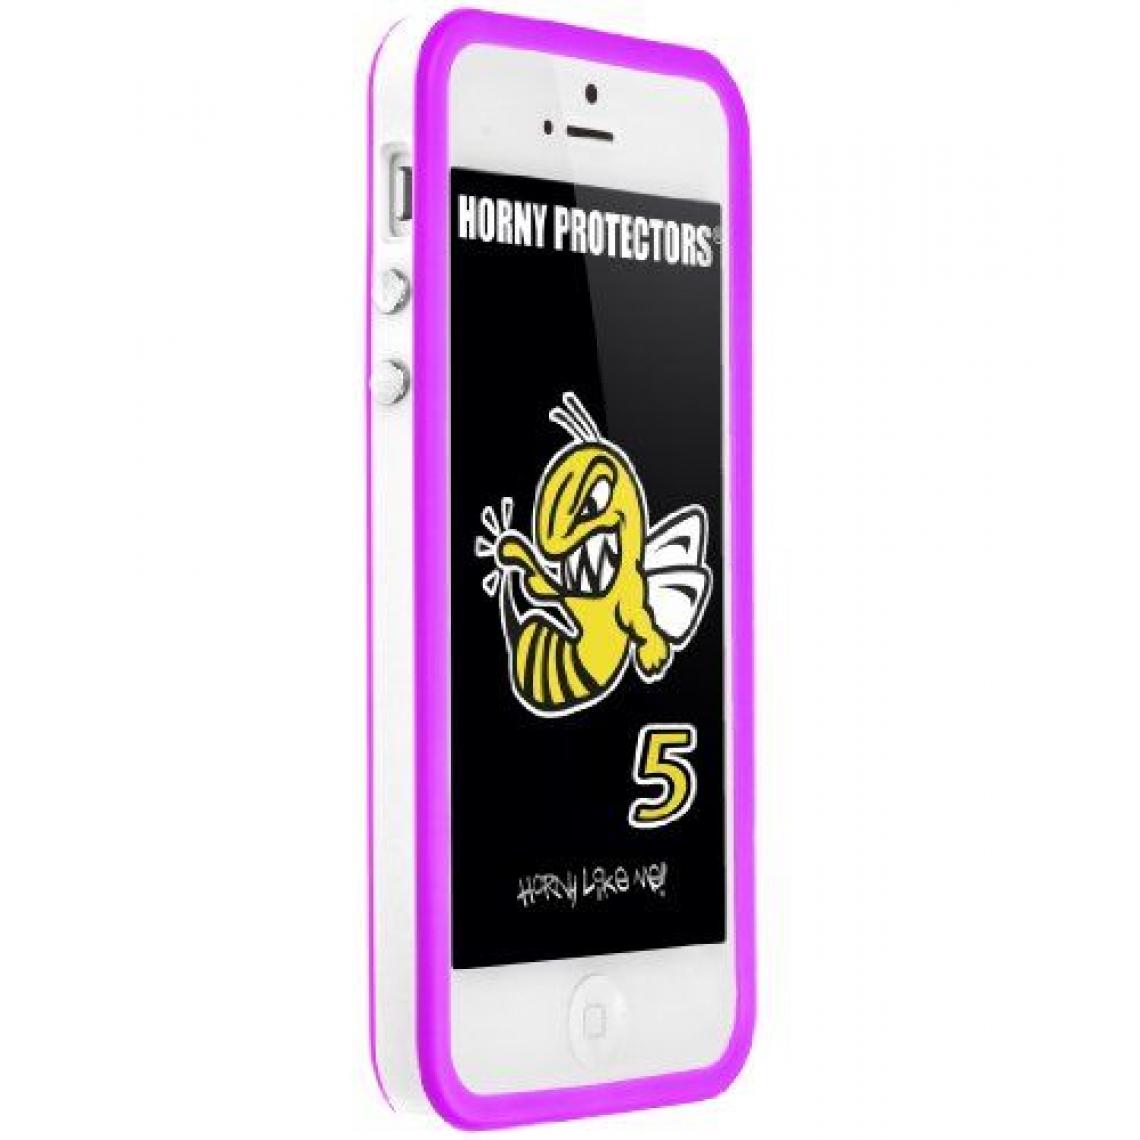 Inconnu - Horny Protectors Étui de protection anti-chocs pour iPhone 5 Multicolore - Coque, étui smartphone